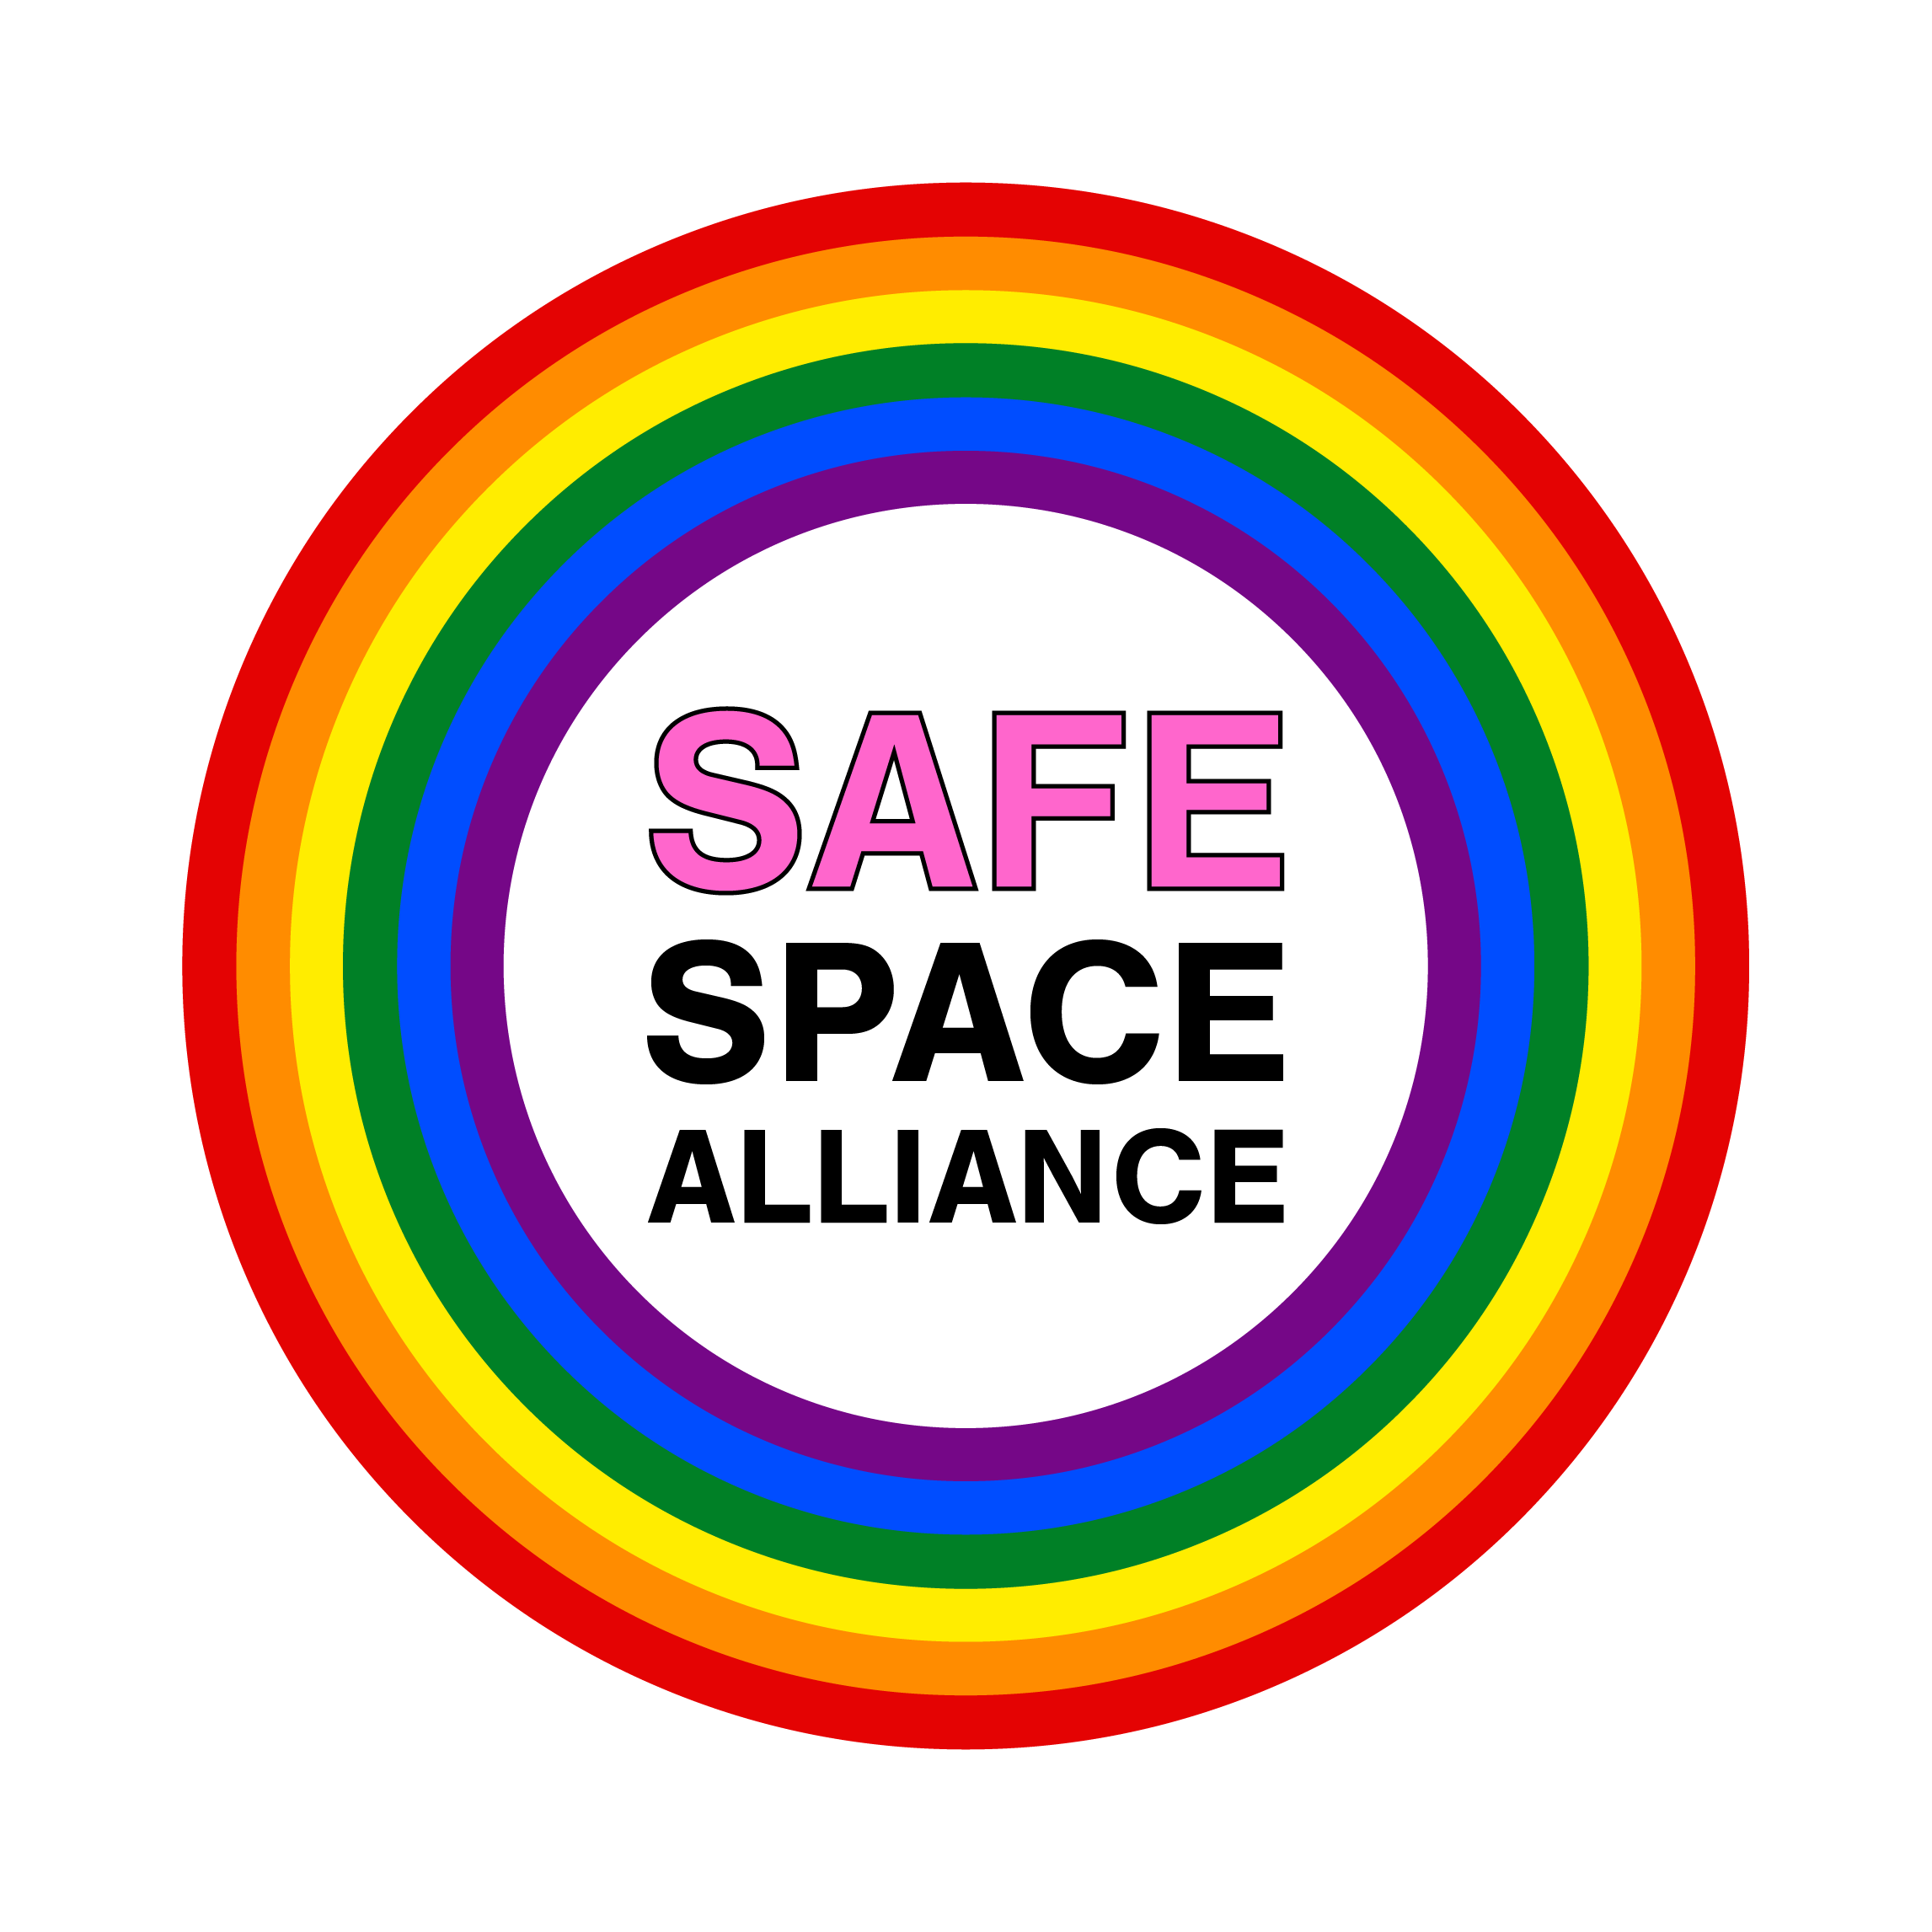 Safe-Space-Alliance-logo-website-badge-transparent-background